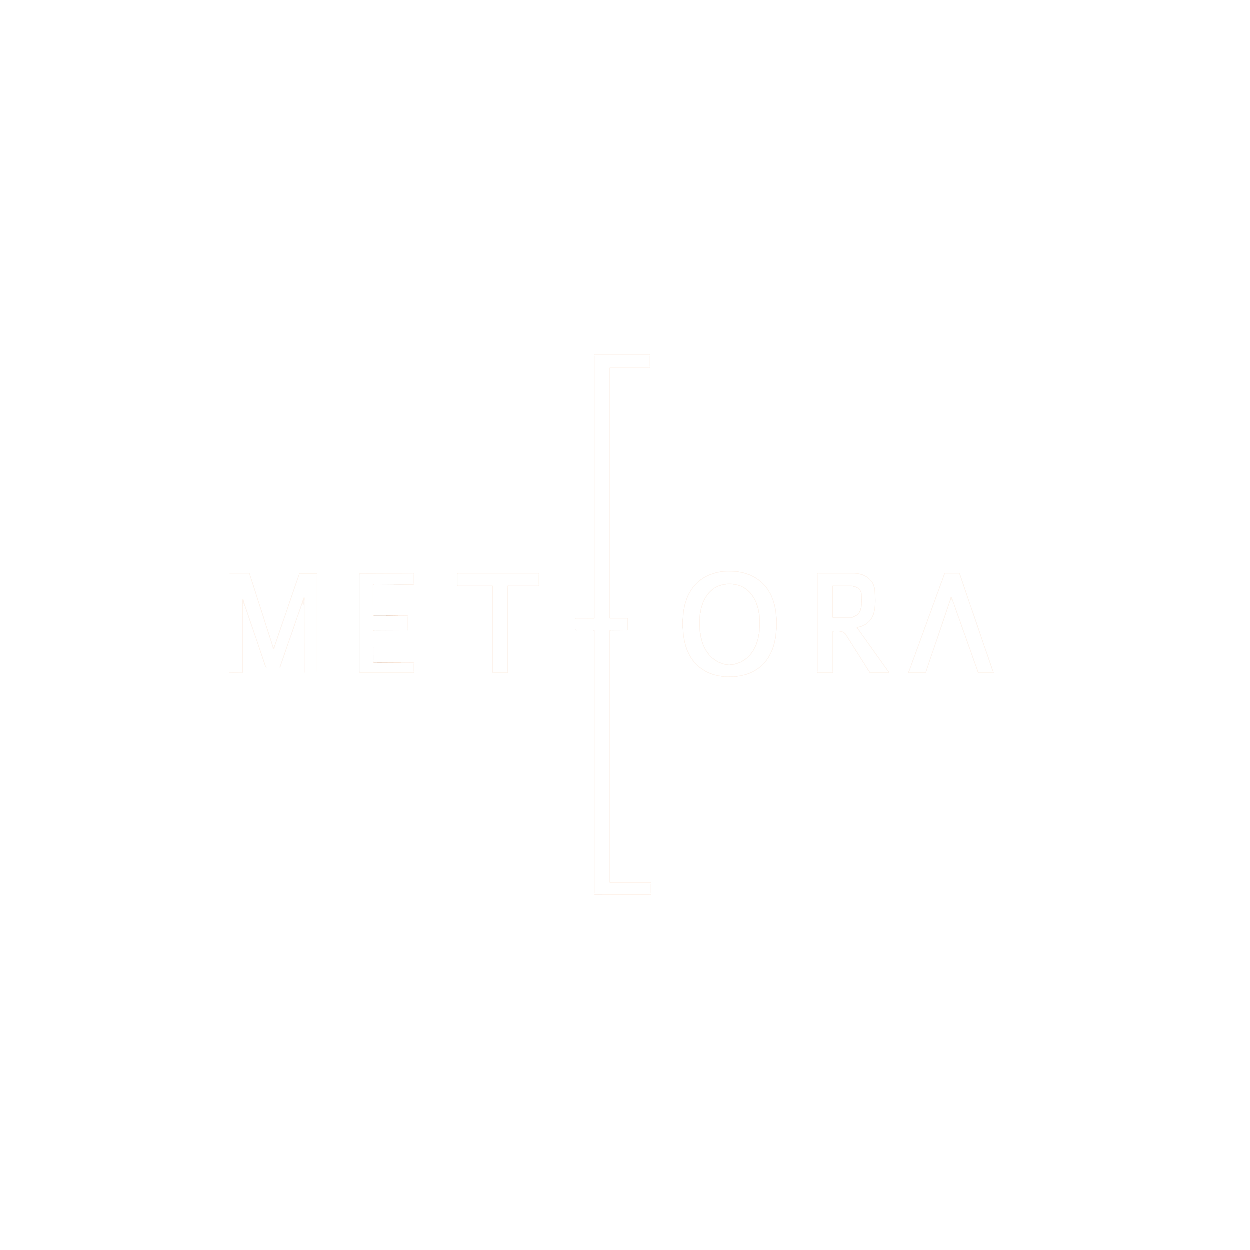 meteora logo-W2.png